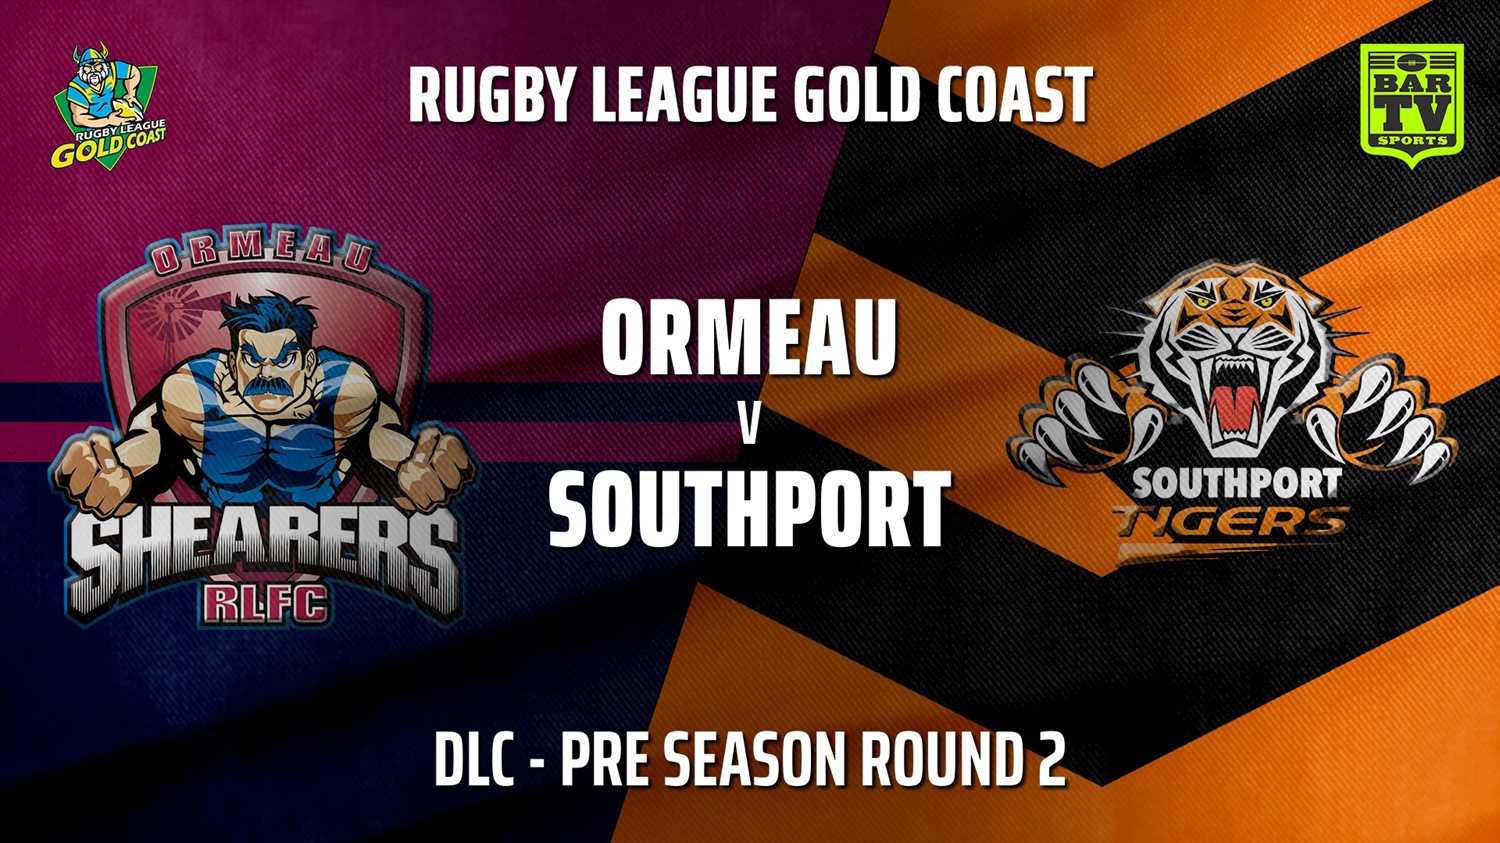 RLGC Pre Season Round 2 - DLC - Ormeau Shearers v Southport Tigers Slate Image